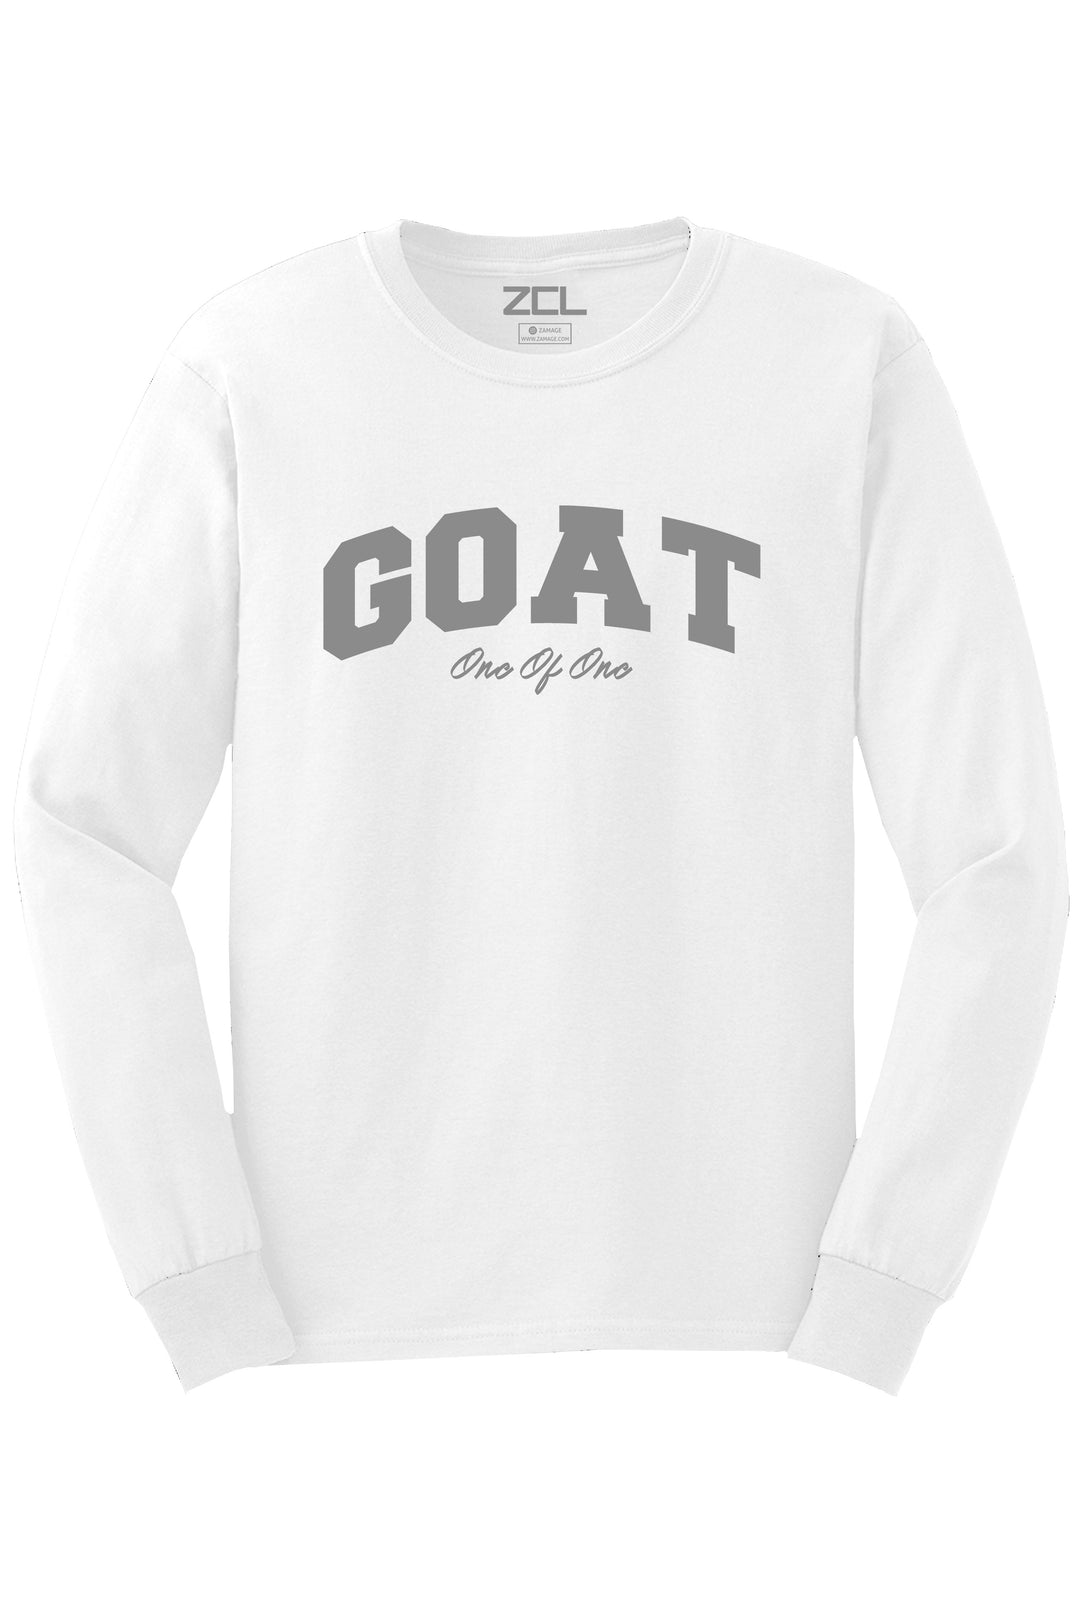 Goat Long Sleeve Tee (Grey Logo) - Zamage